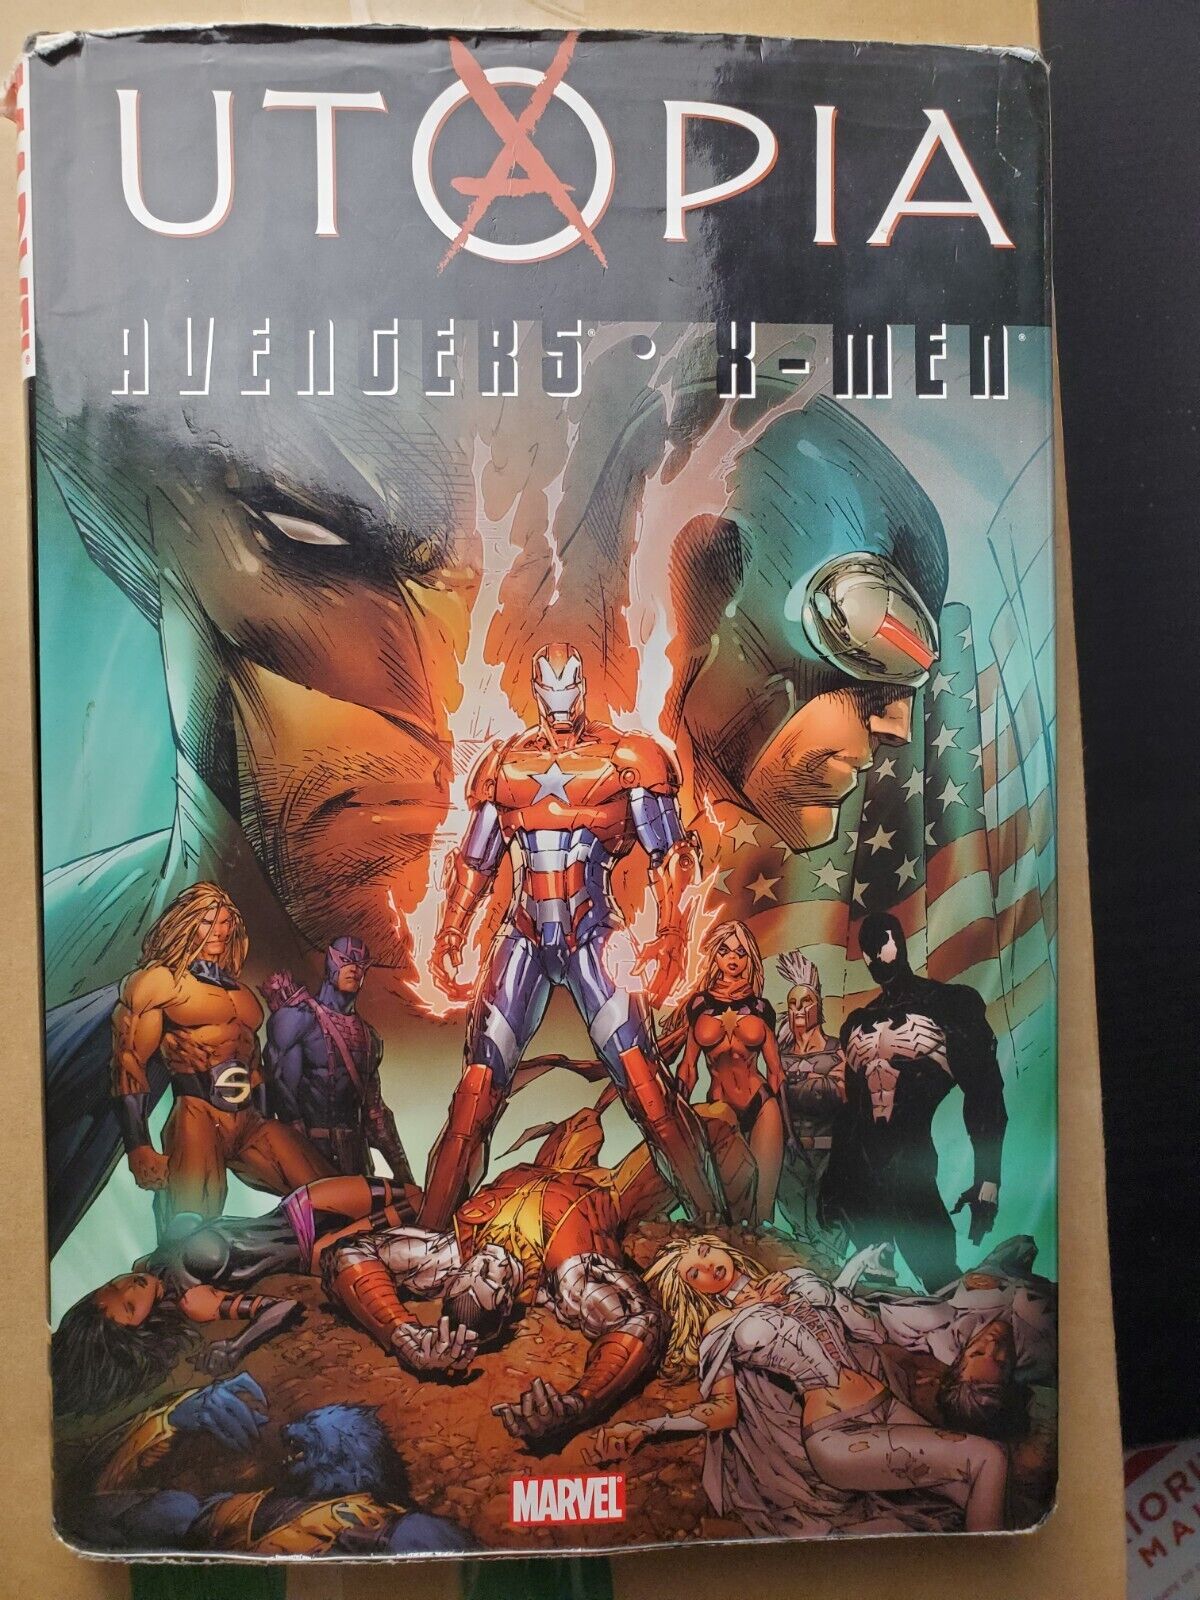 Avengers / X-Men: Utopia #1 (Marvel, November 2009)